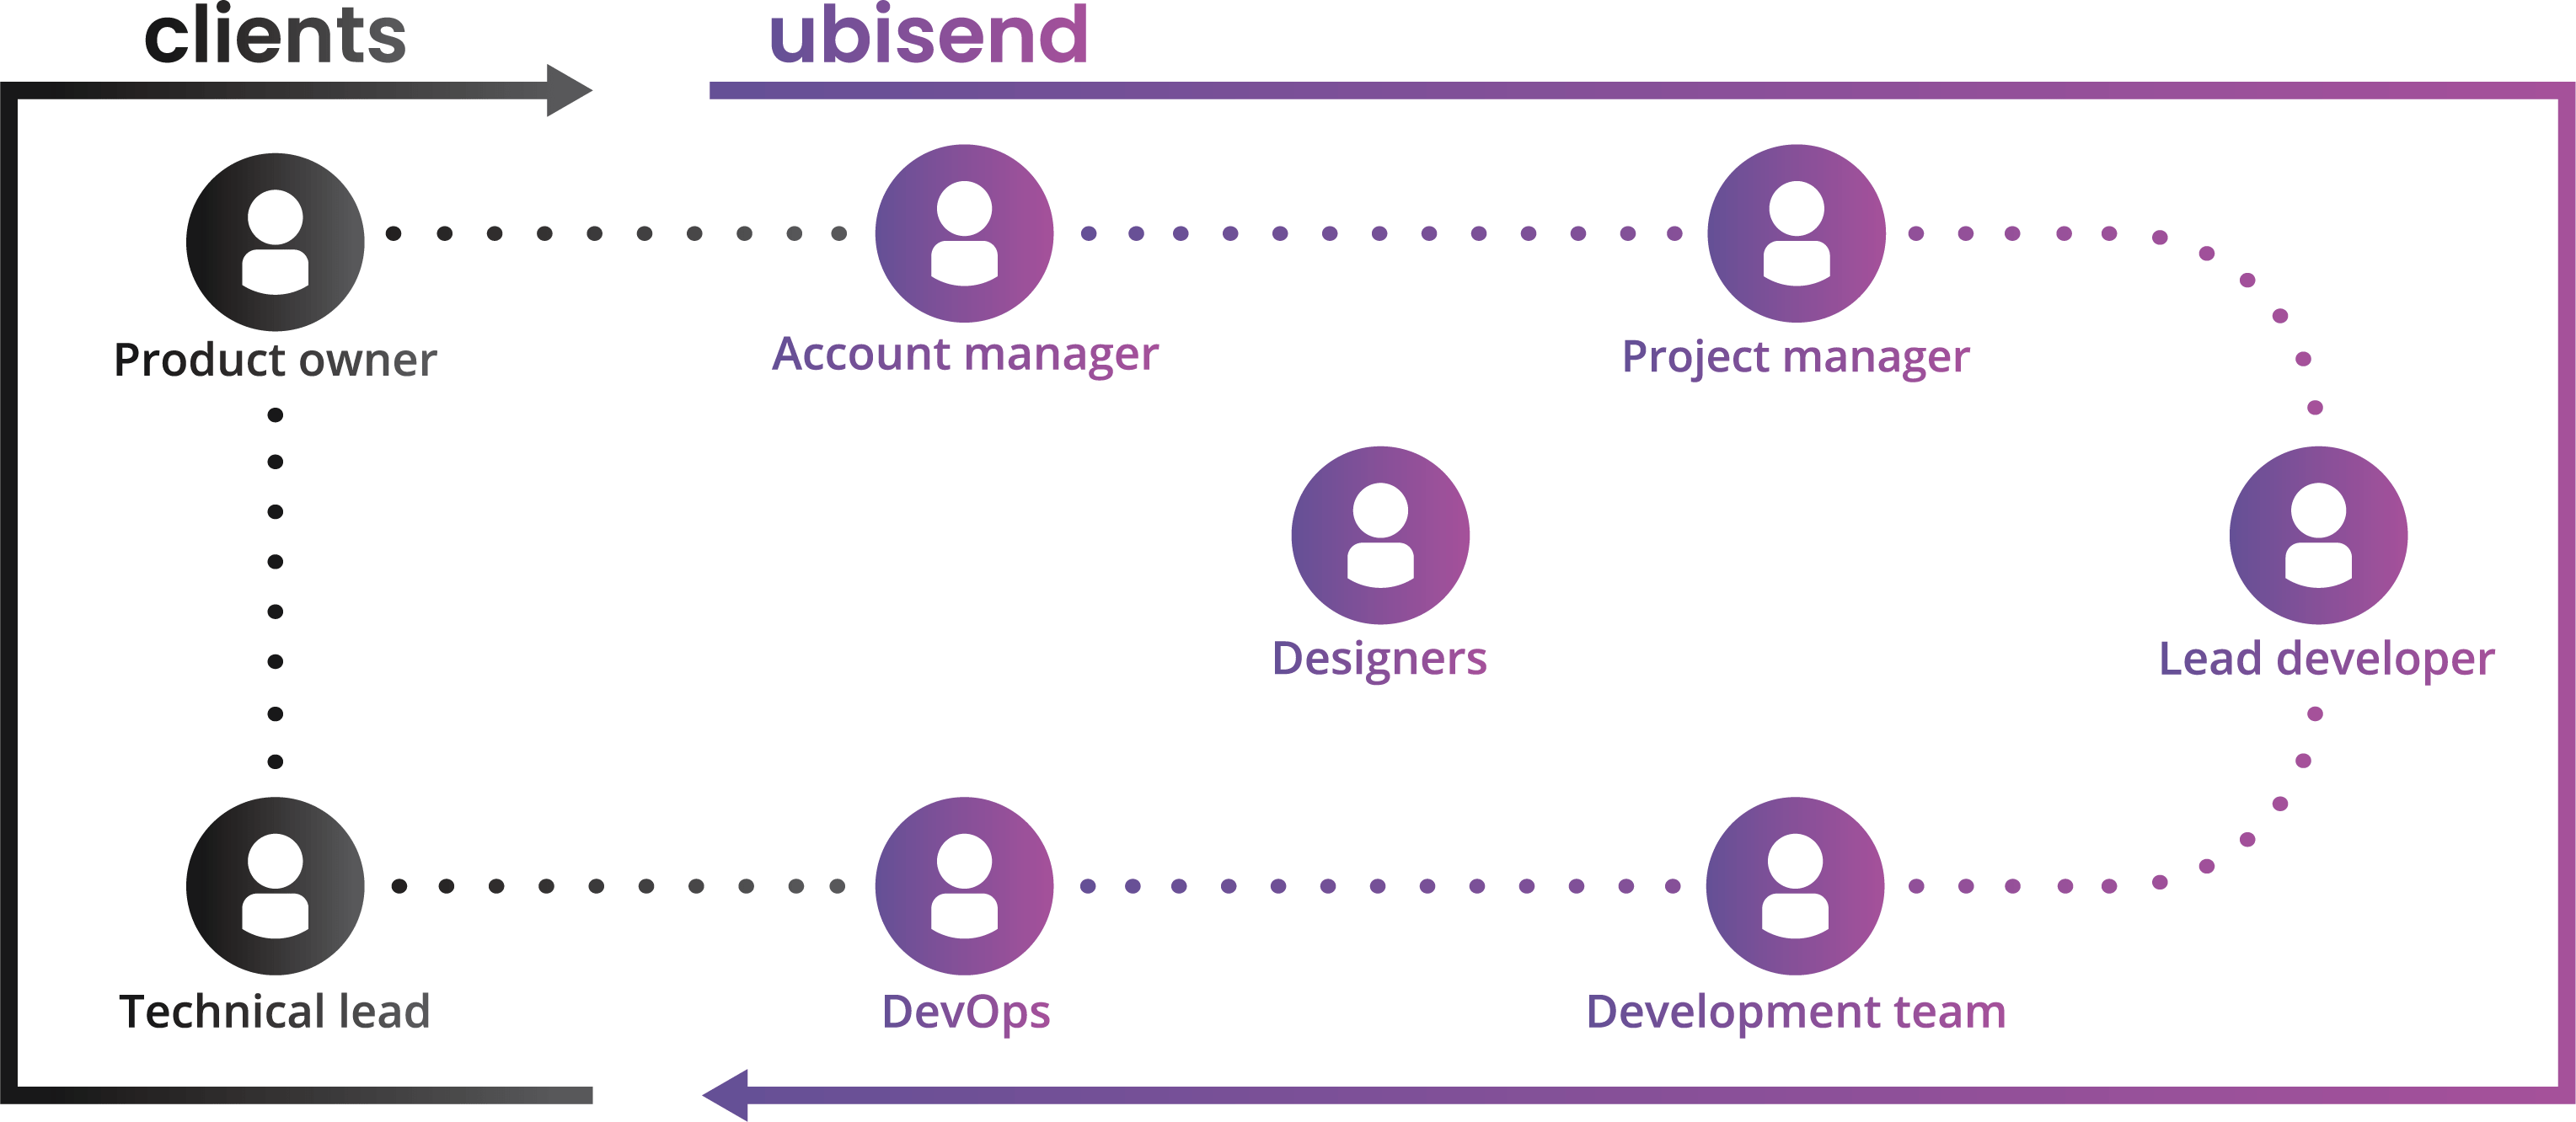 ubisend chatbot development team structure